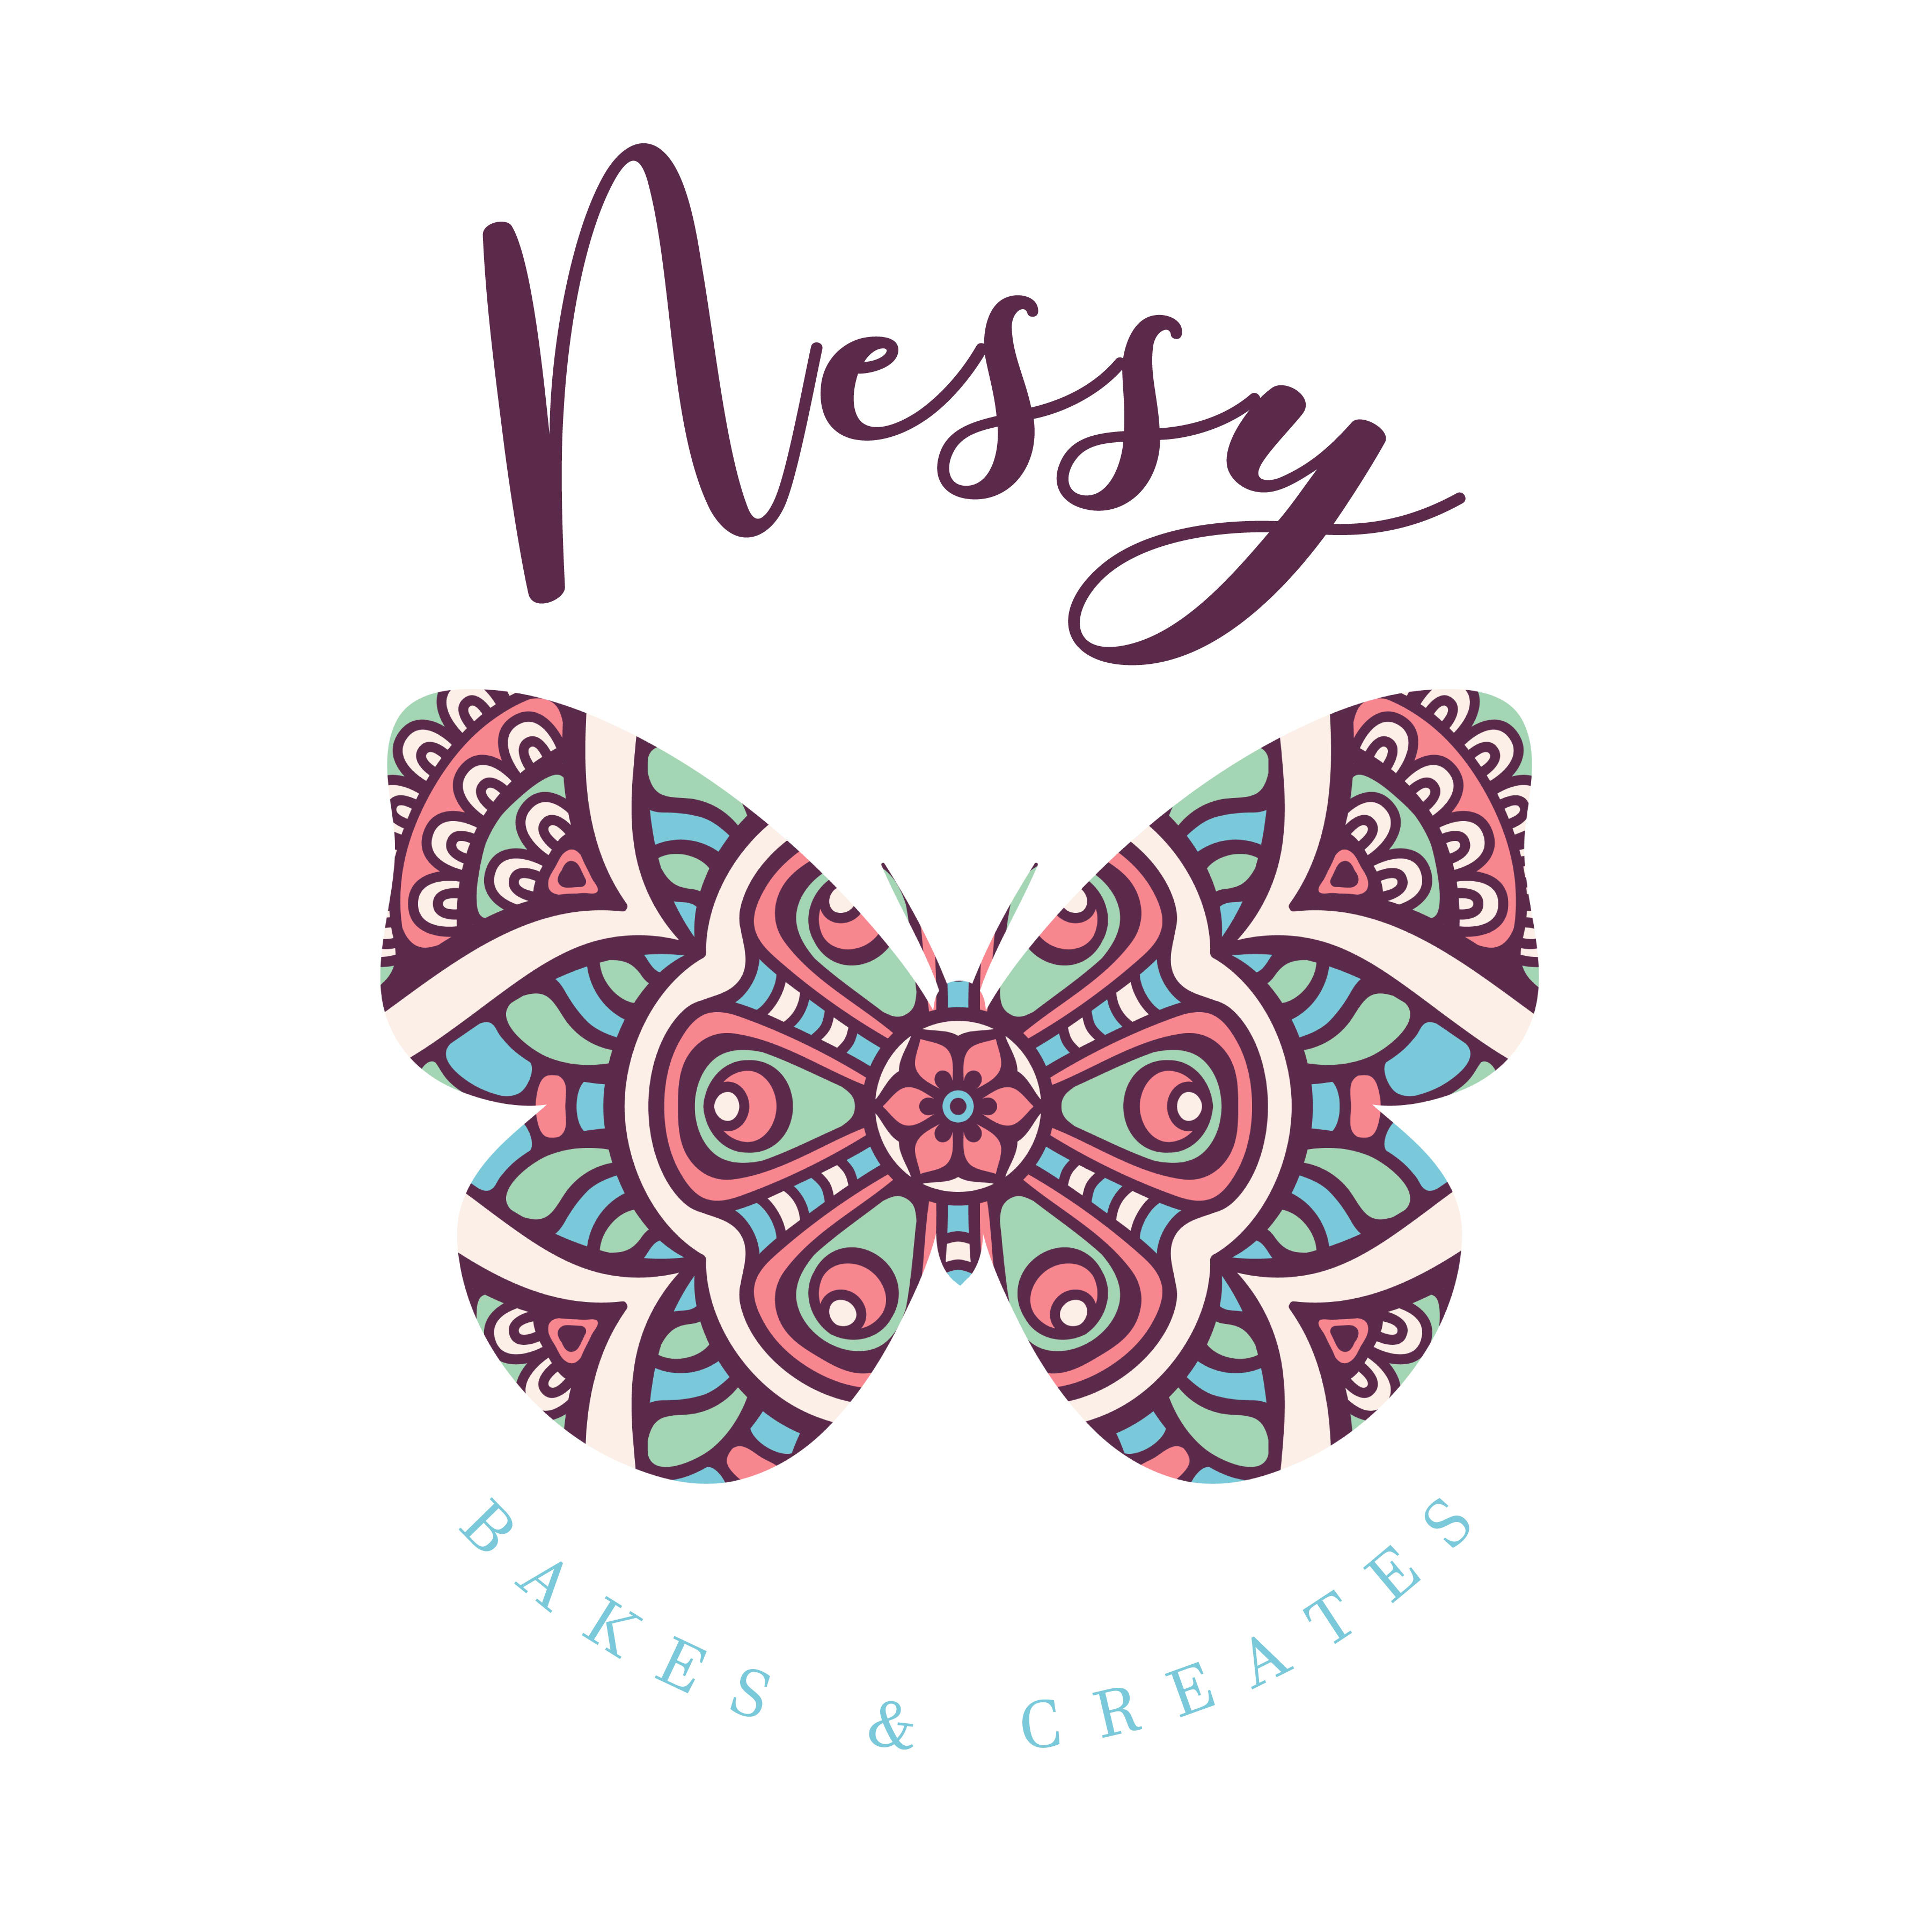 Nessy Bakes and Creates